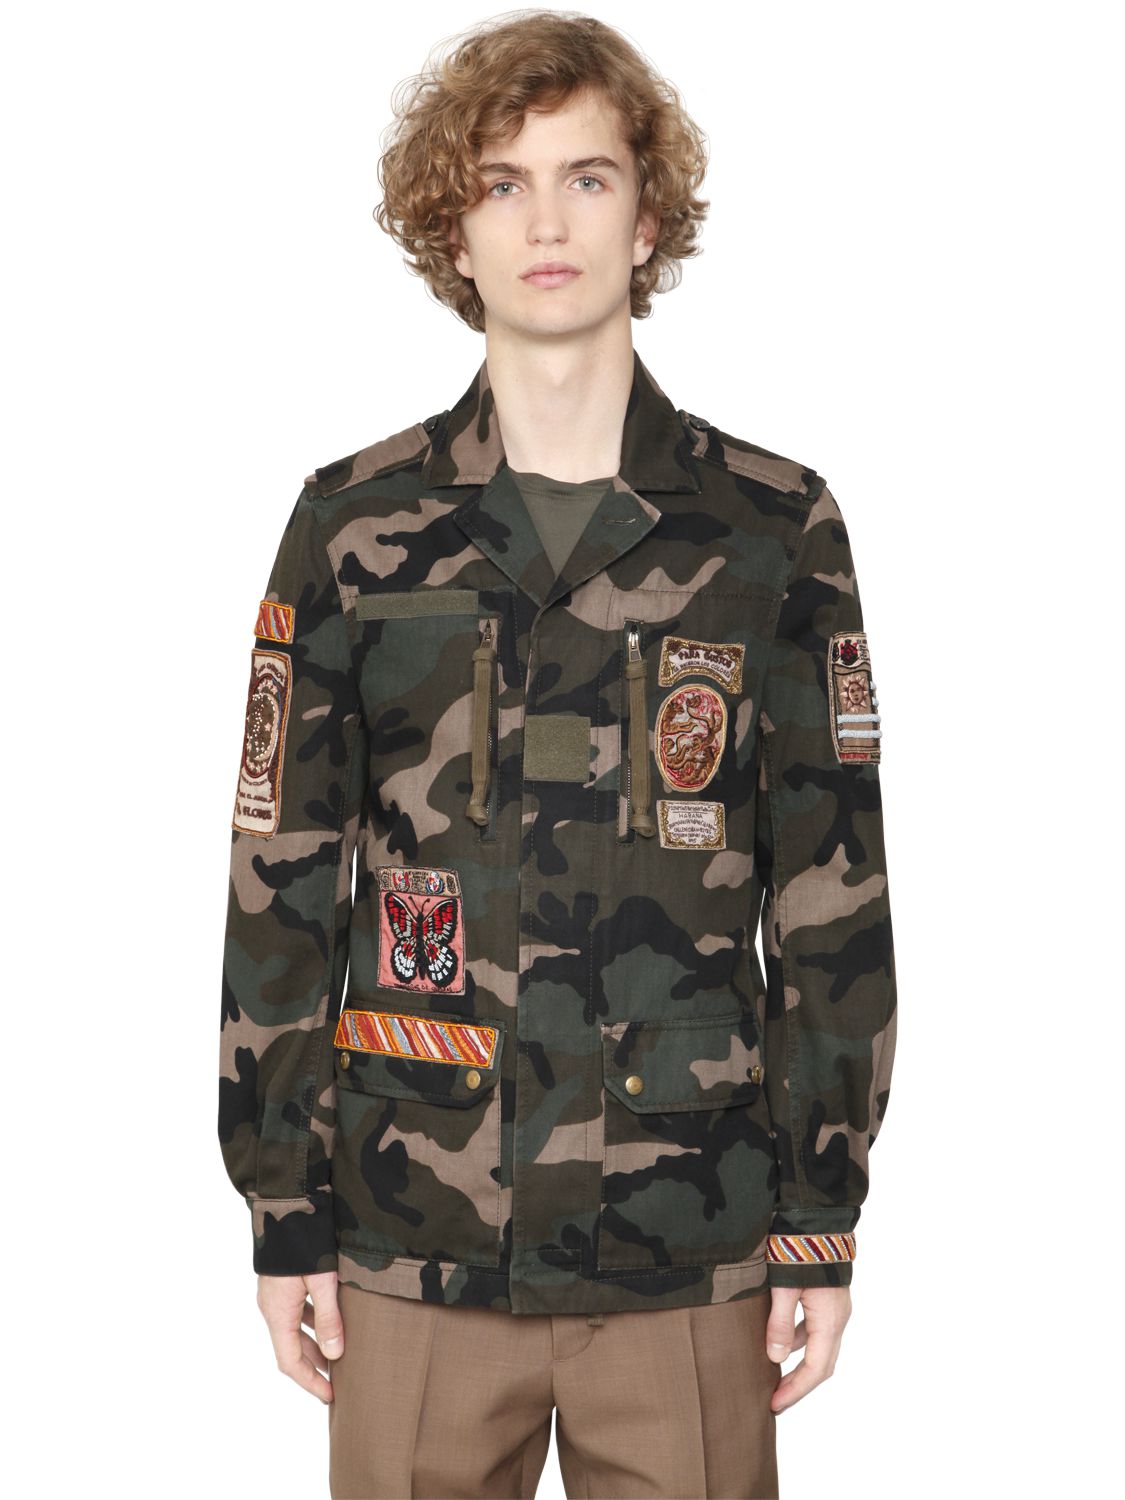 Valentino giacca in drill di cotone camouflage camouflage uomo abbigliamento,valentino sneakers vendita saldi,valentino sandalias,creativo